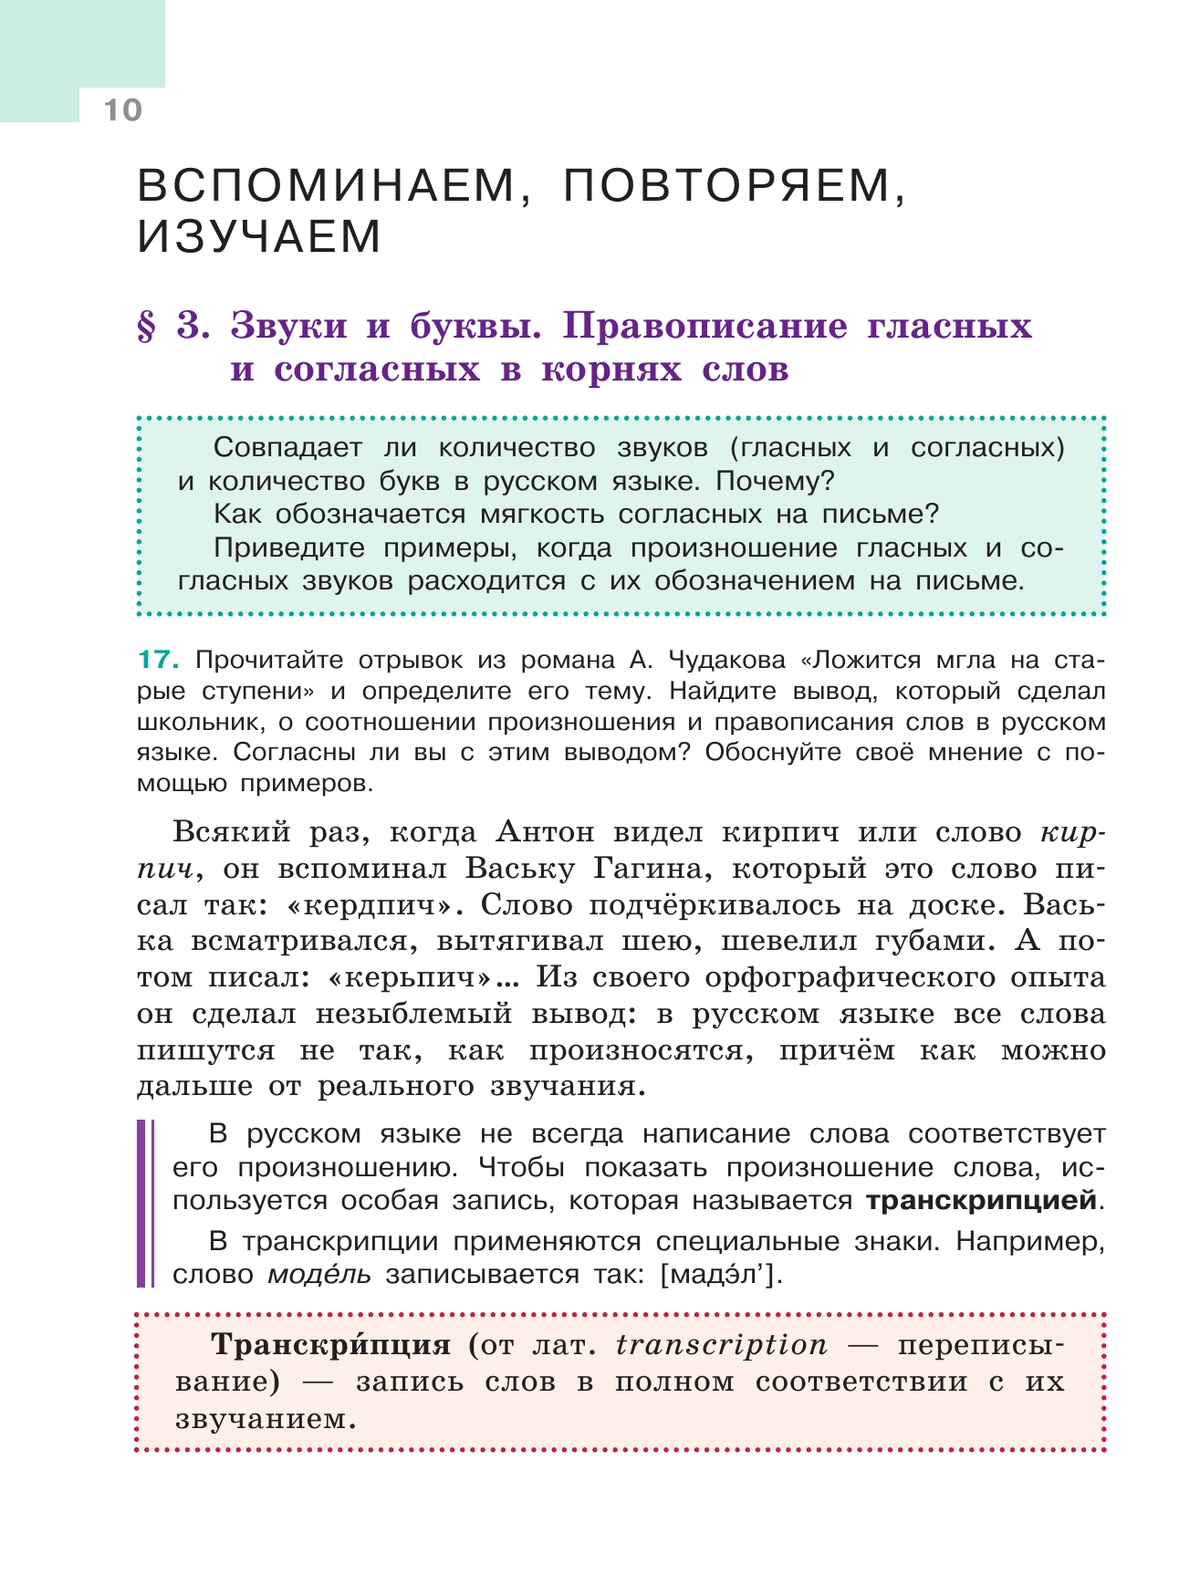 Русский язык. 5 класс. Учебник. В 2-х ч. Ч. 1 6